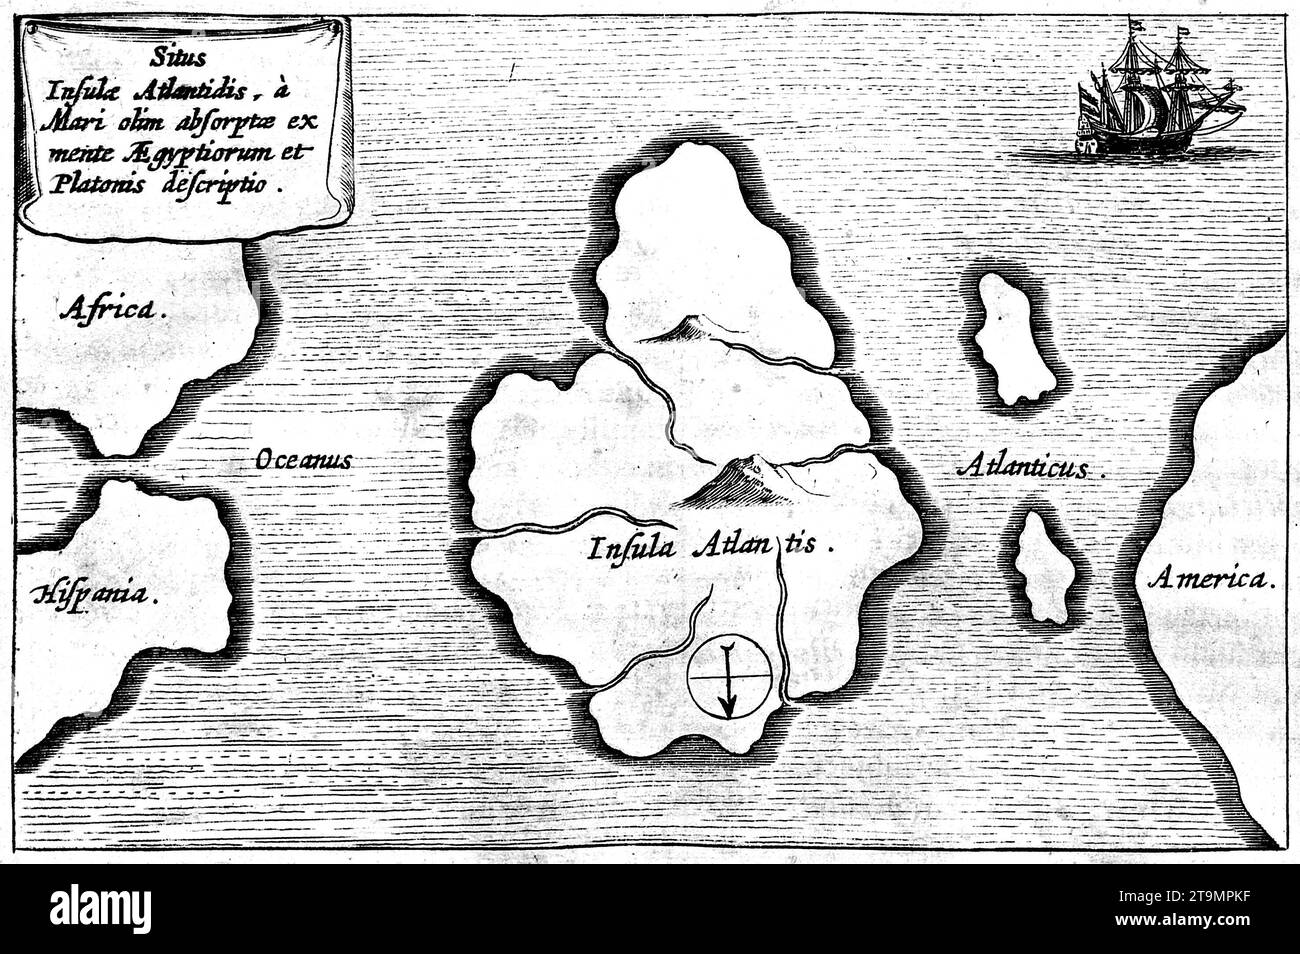 Atlántida. Mapa de Athanasius Kircher de la Atlántida, colocándola en medio del Océano Atlántico, de Mundus Subterraneus 1669, publicado en Amsterdam Foto de stock